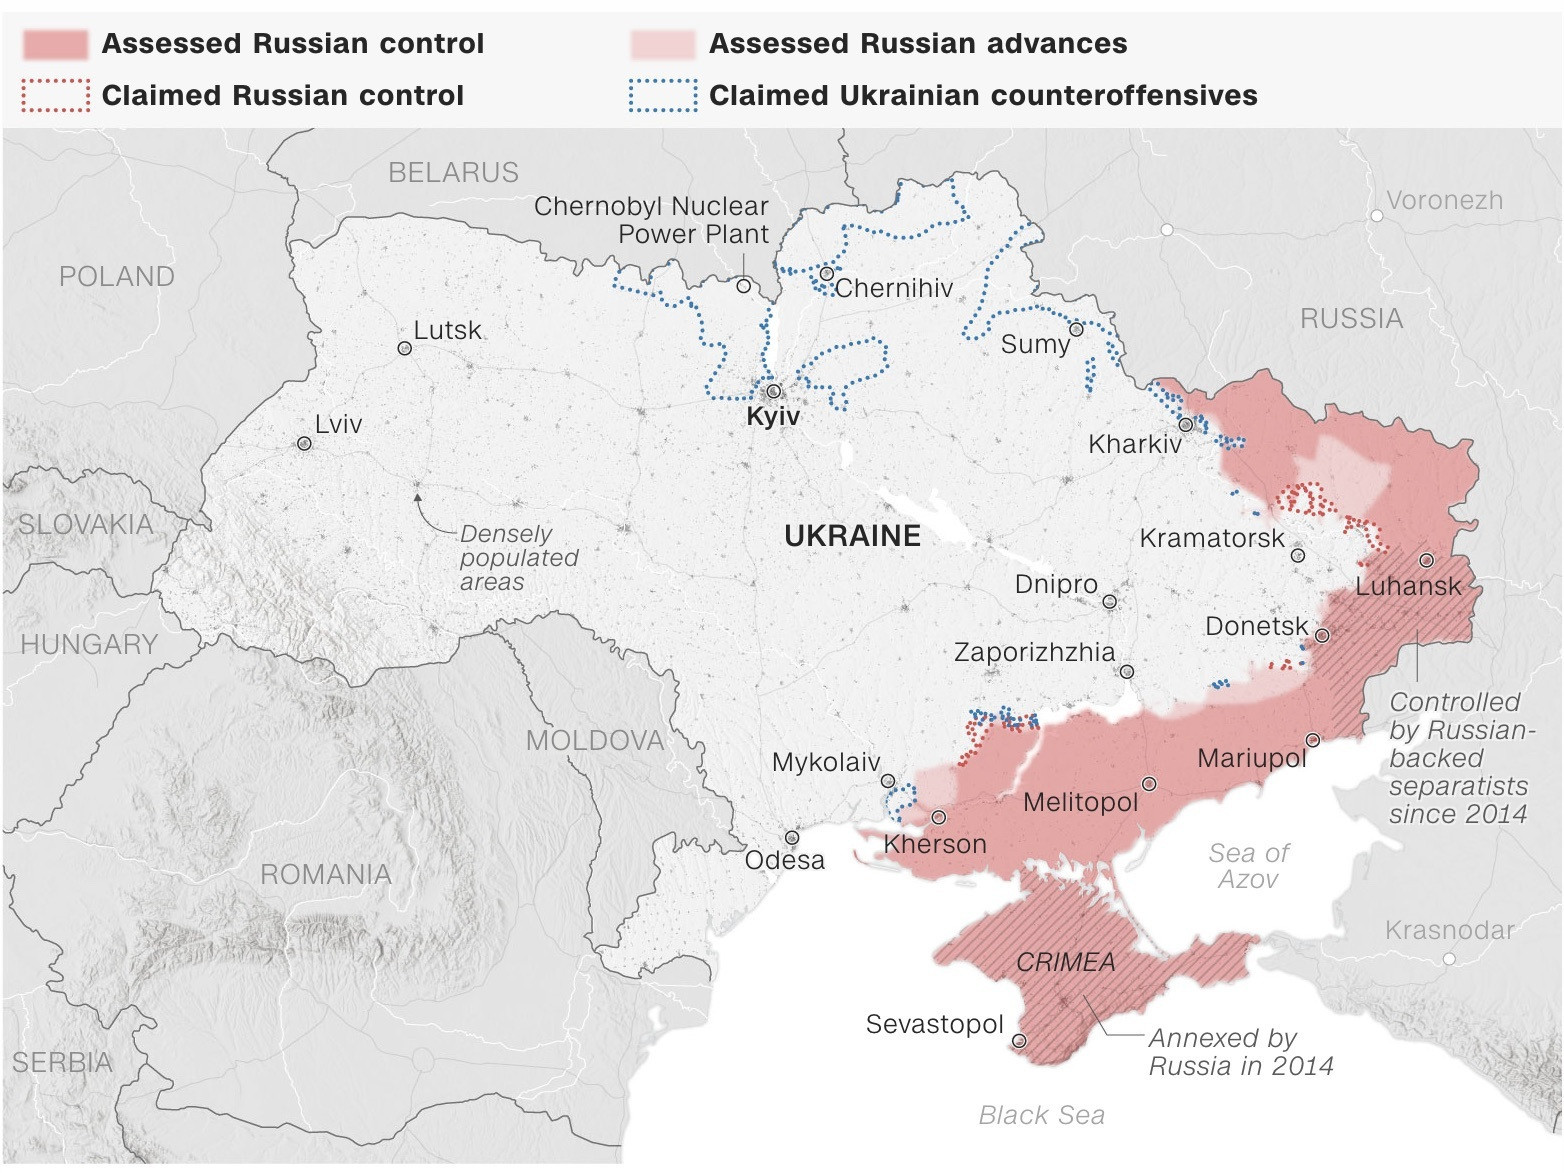 "Орос довтолгоогоо эрчимжүүлснээр зүүн нутгийн зарим хотуудаа алдаж байгаа" гэж Украин хүлээн зөвшөөрчээ